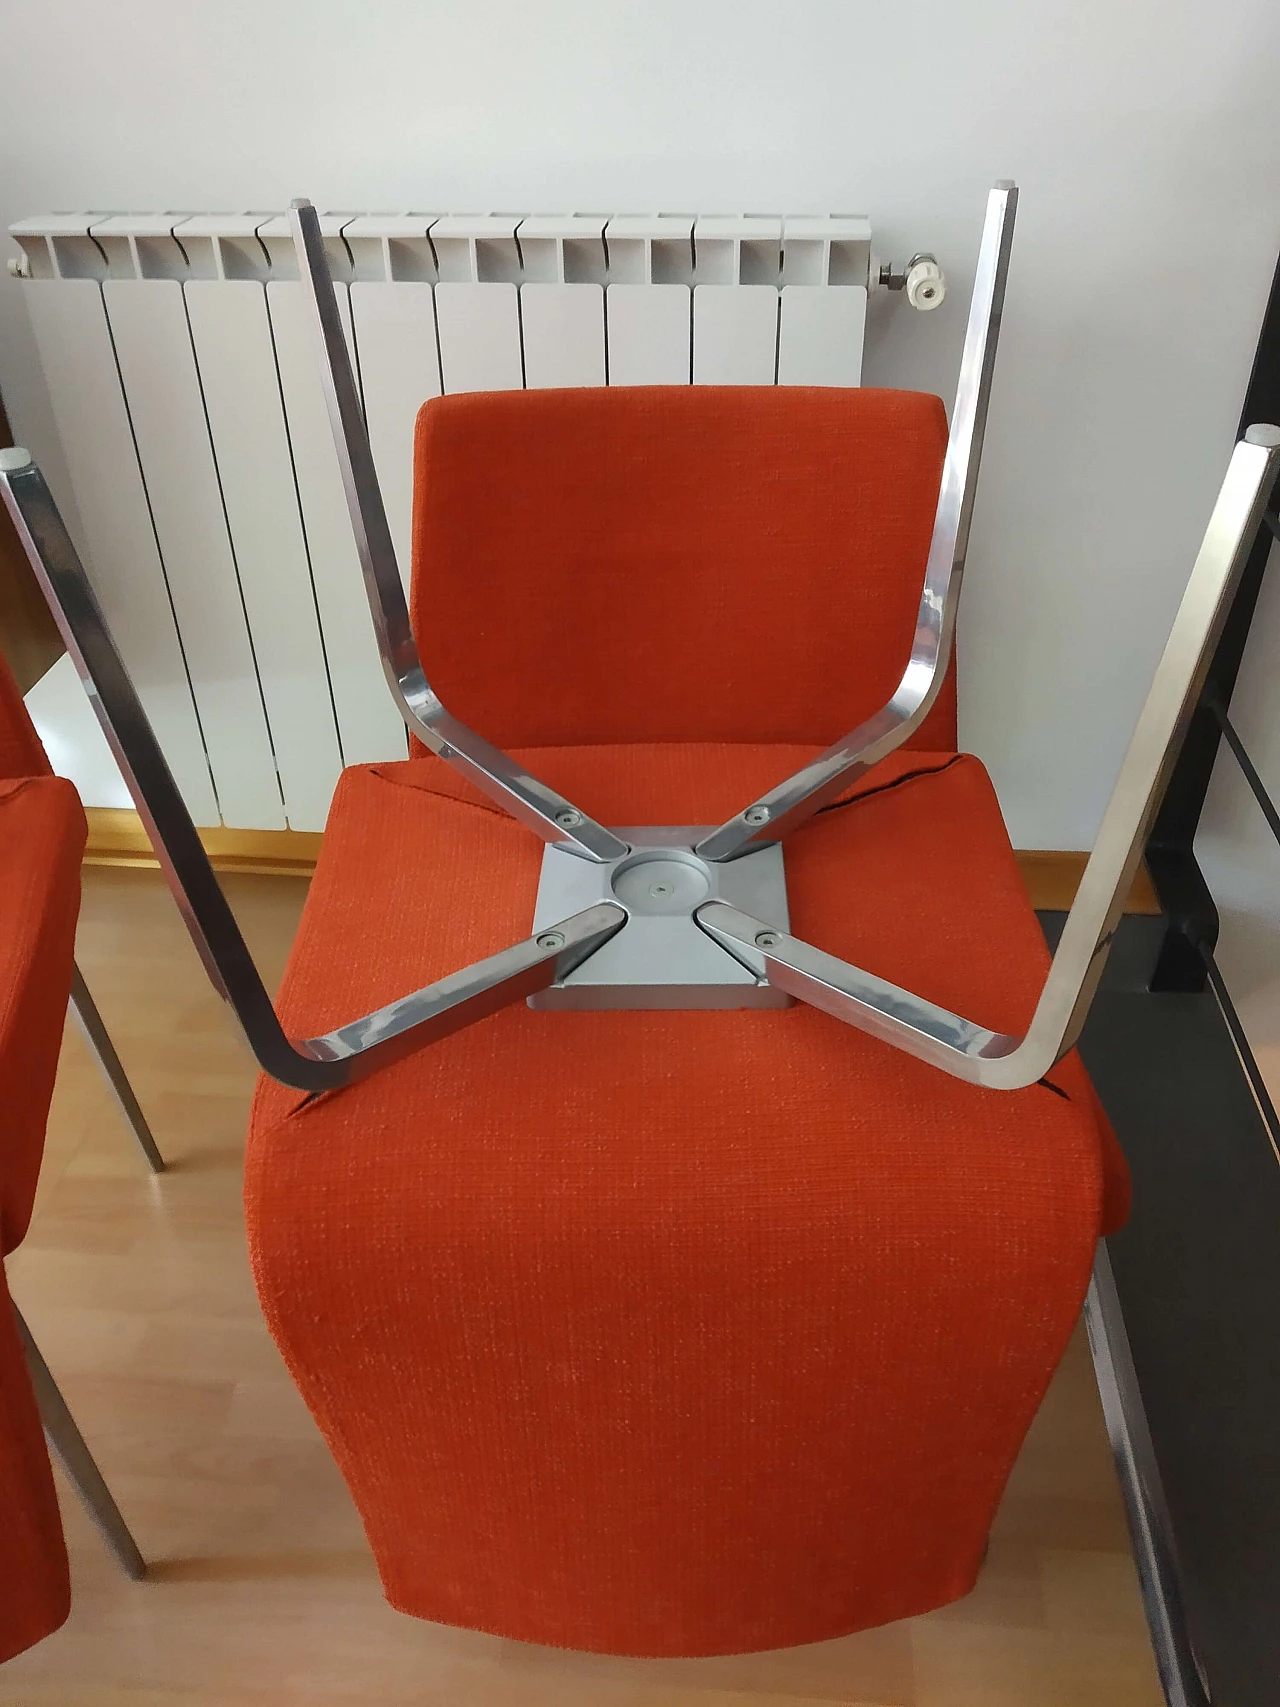 4 Hella Chairs by Mauro Lipparini for MisuraEmme 1477275